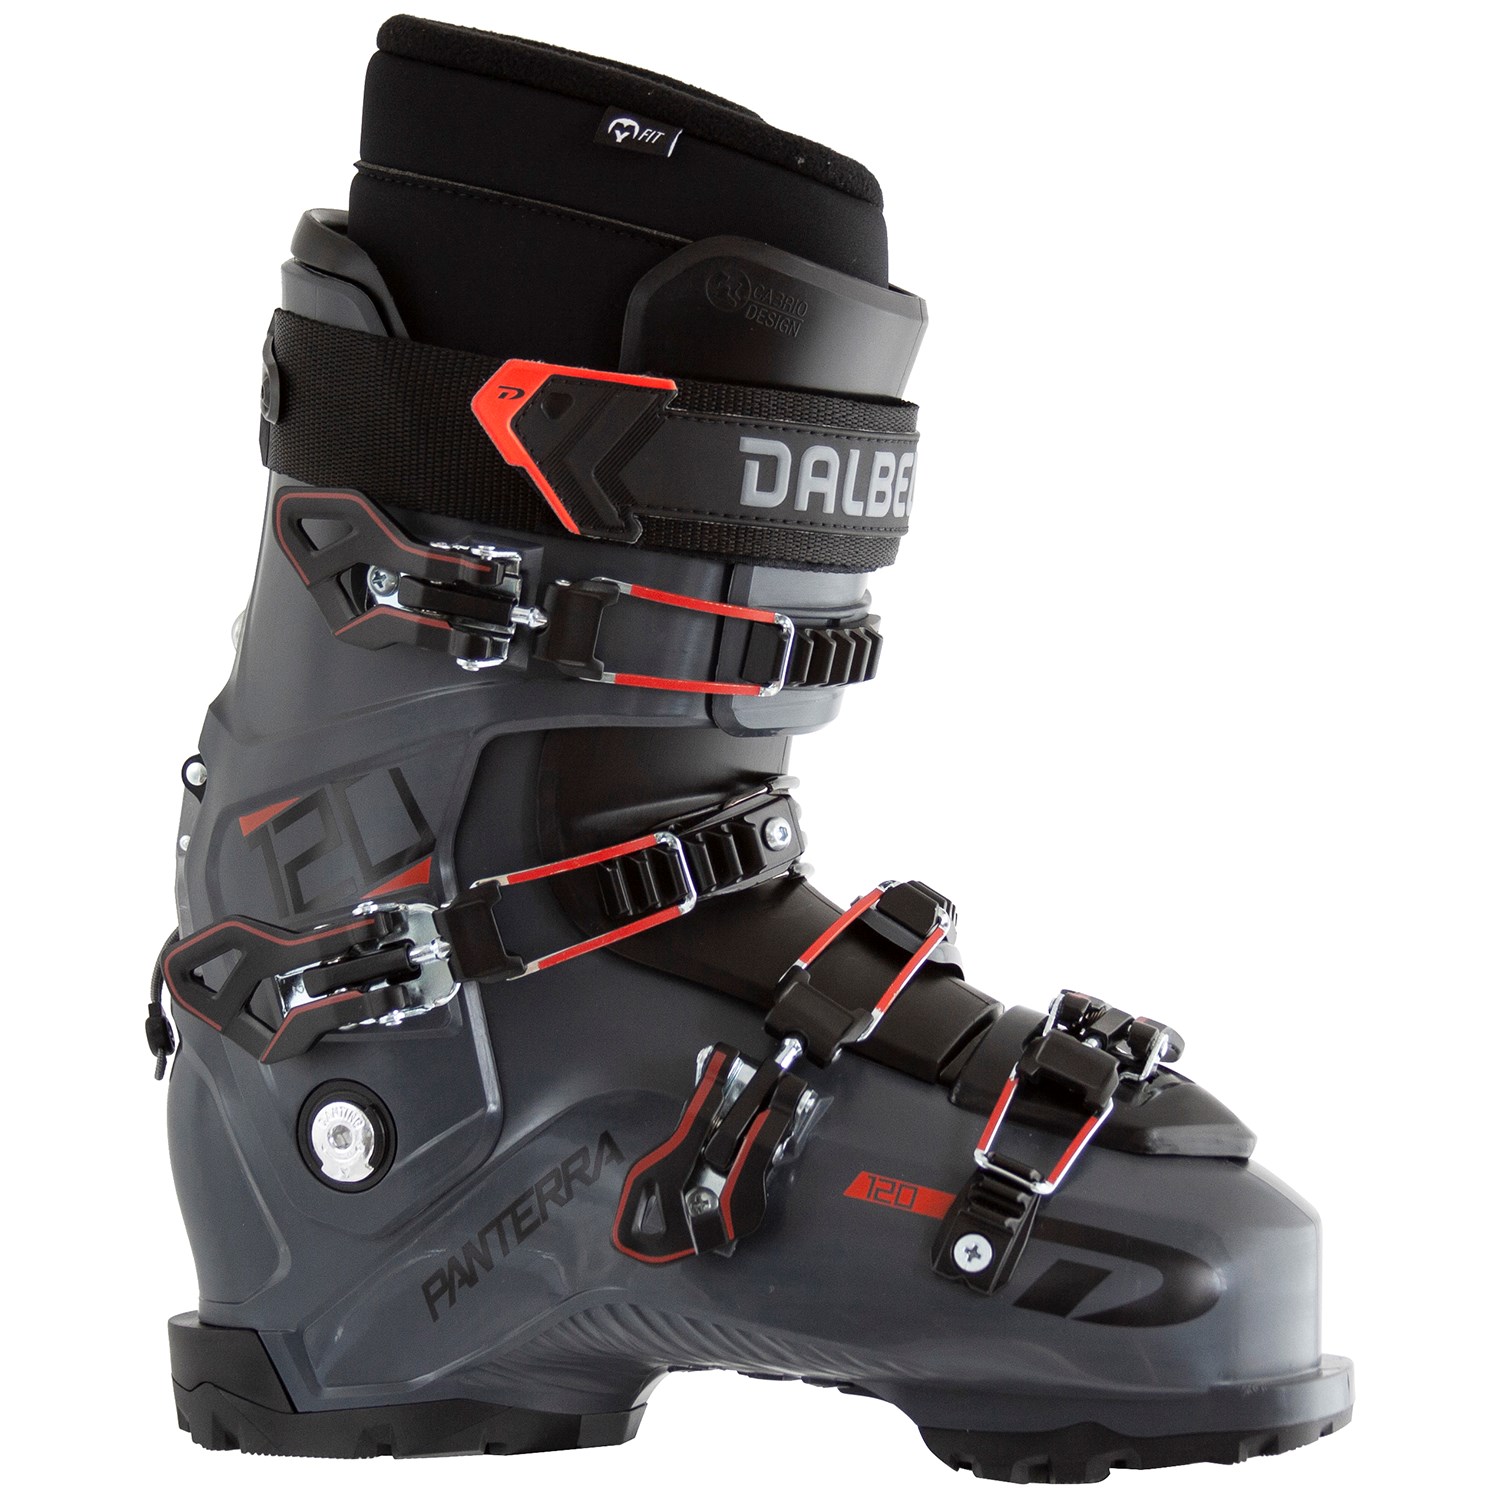 Dalbello DS 120 Ski Boot Size 28.5 Color Black/Orange NEW in box 